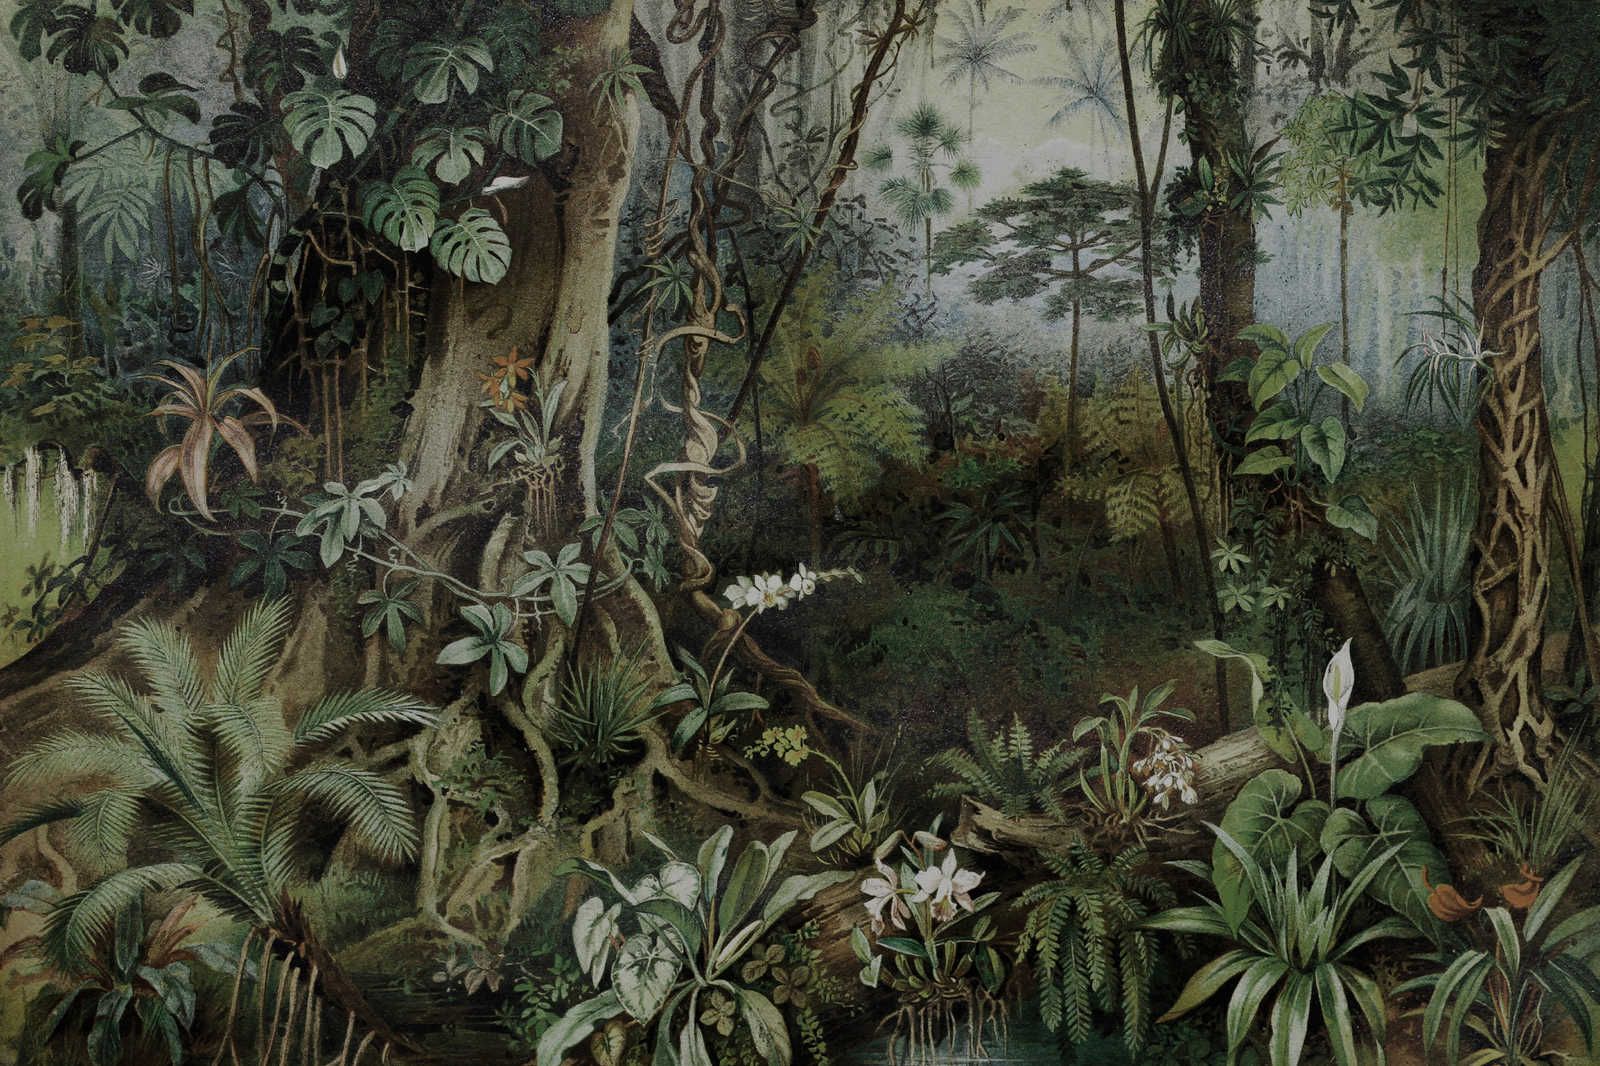             Dschungel Leinwandbild im Zeichenstil – 1,20 m x 0,80 m
        